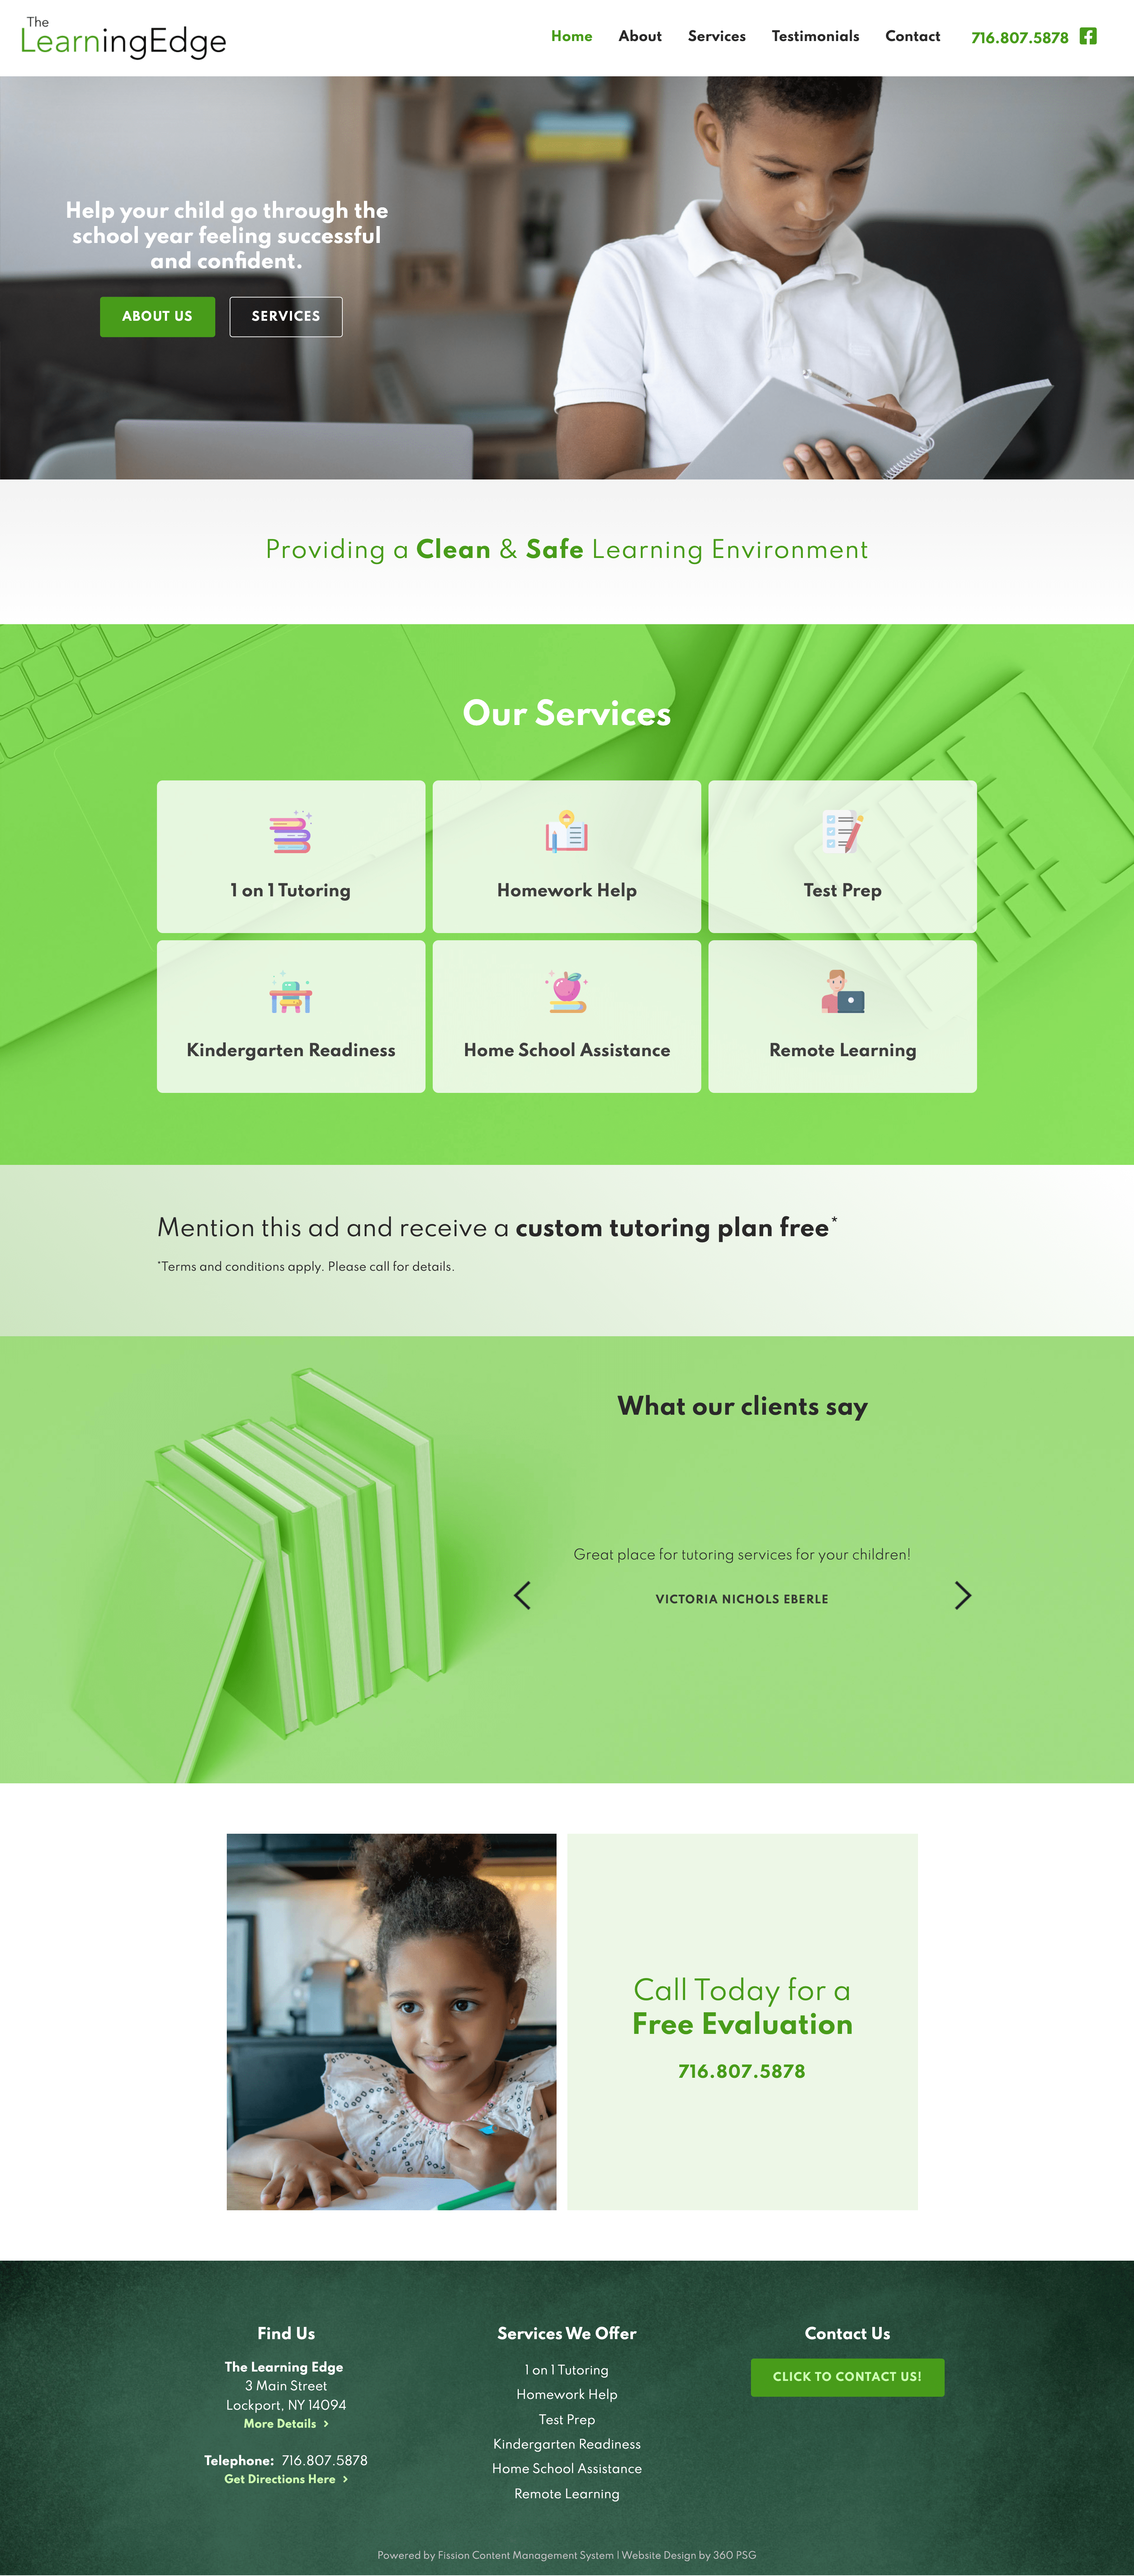 The Learning Edge Website - Desktop